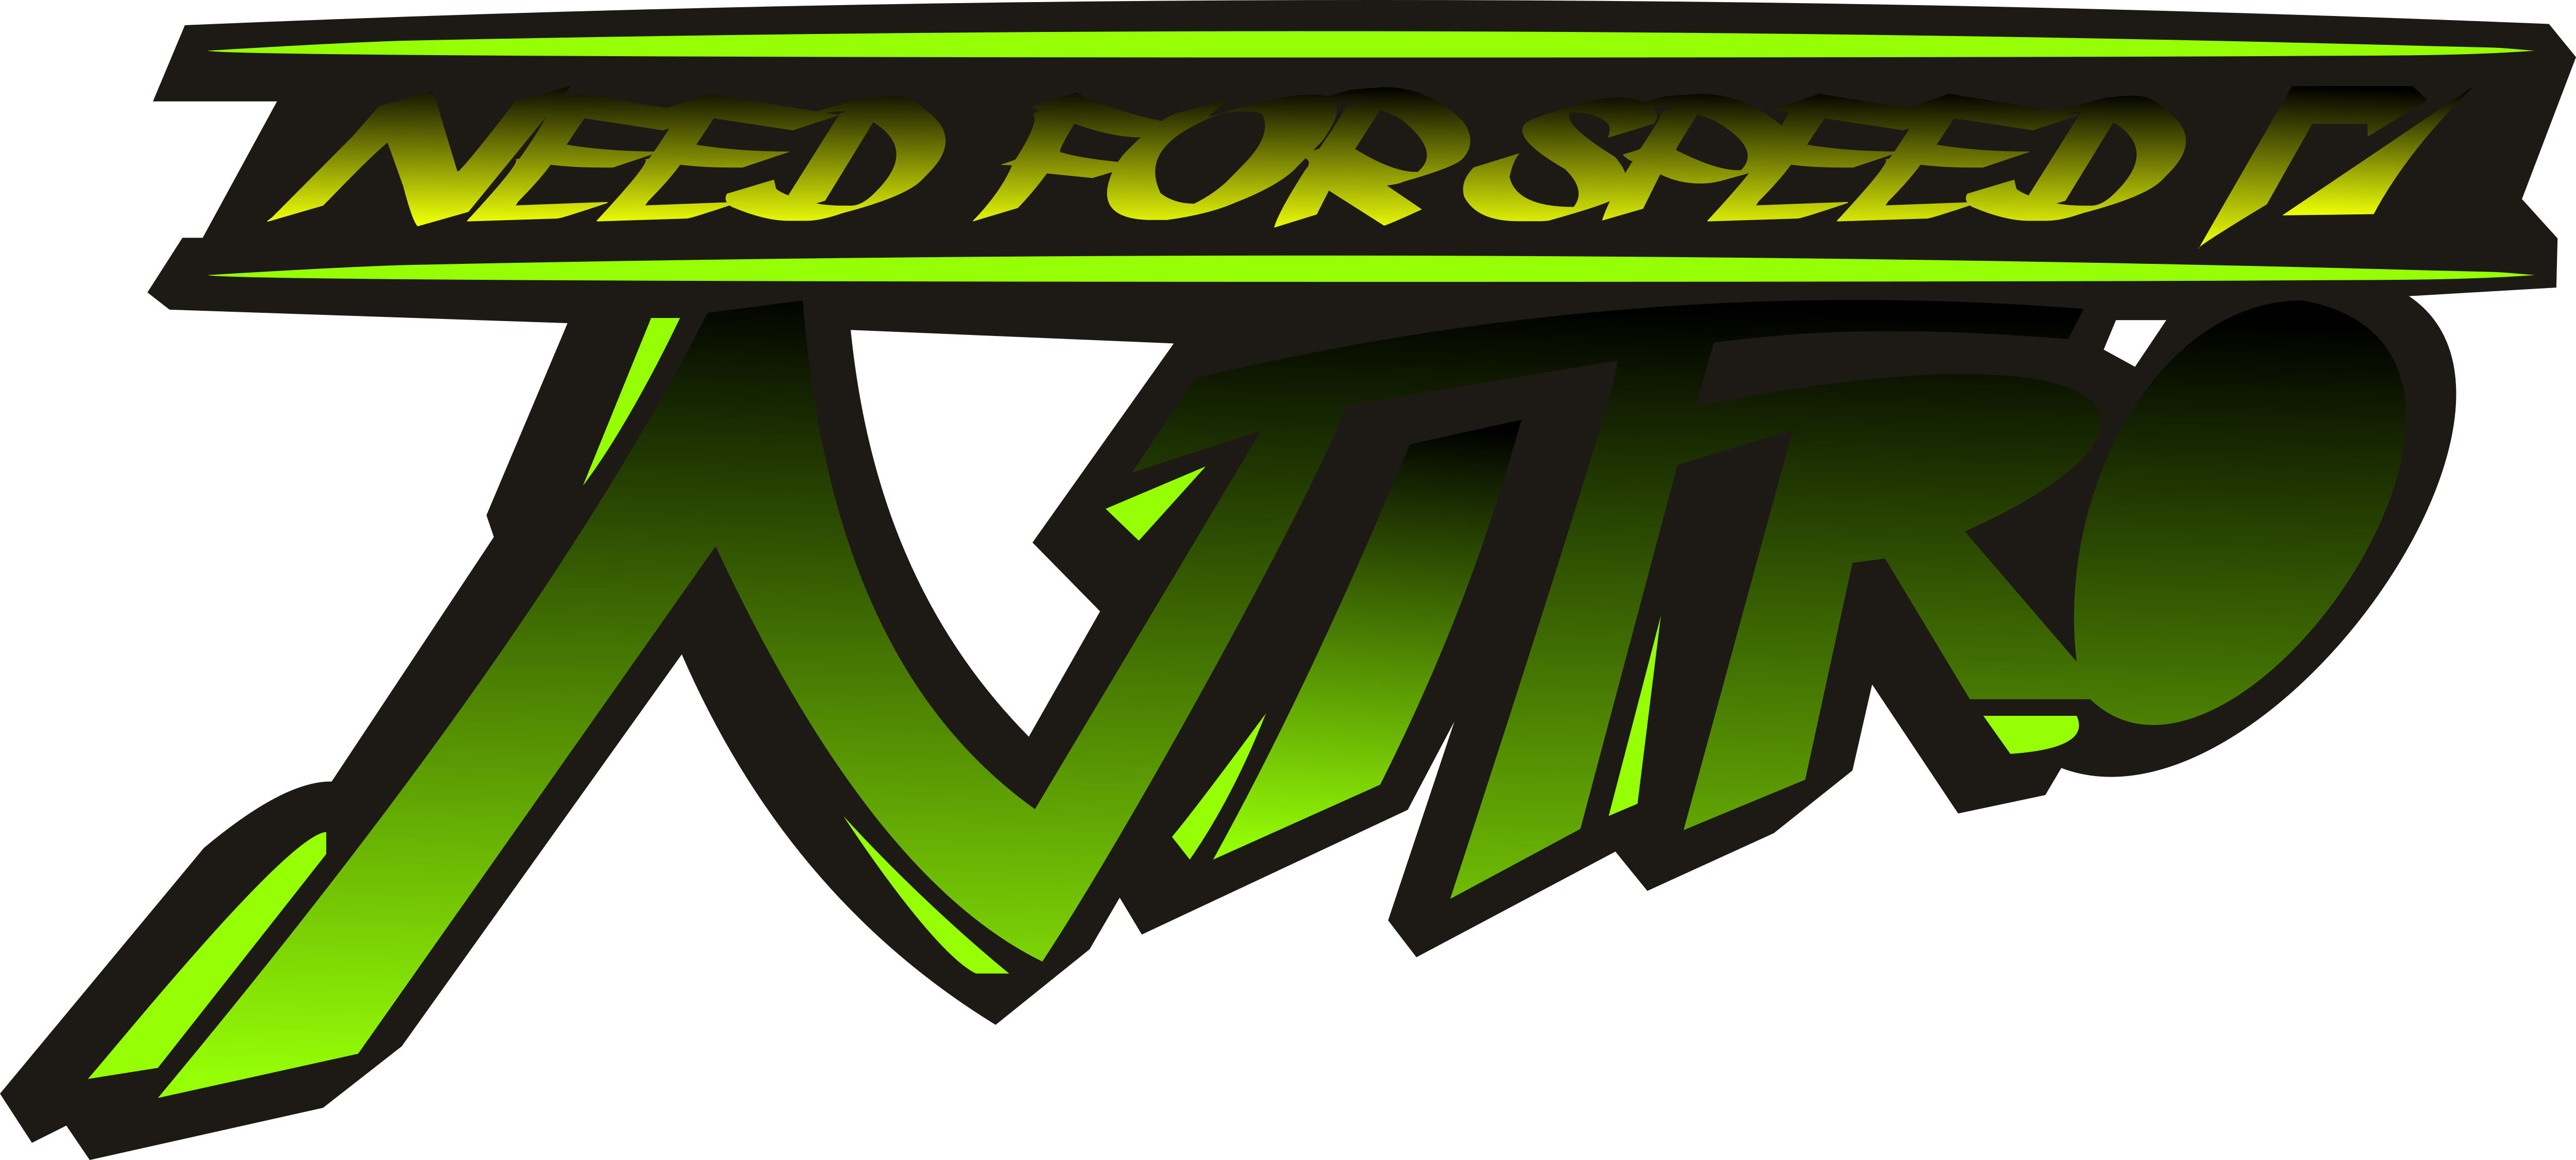 Needfor Speed Nitro Logo